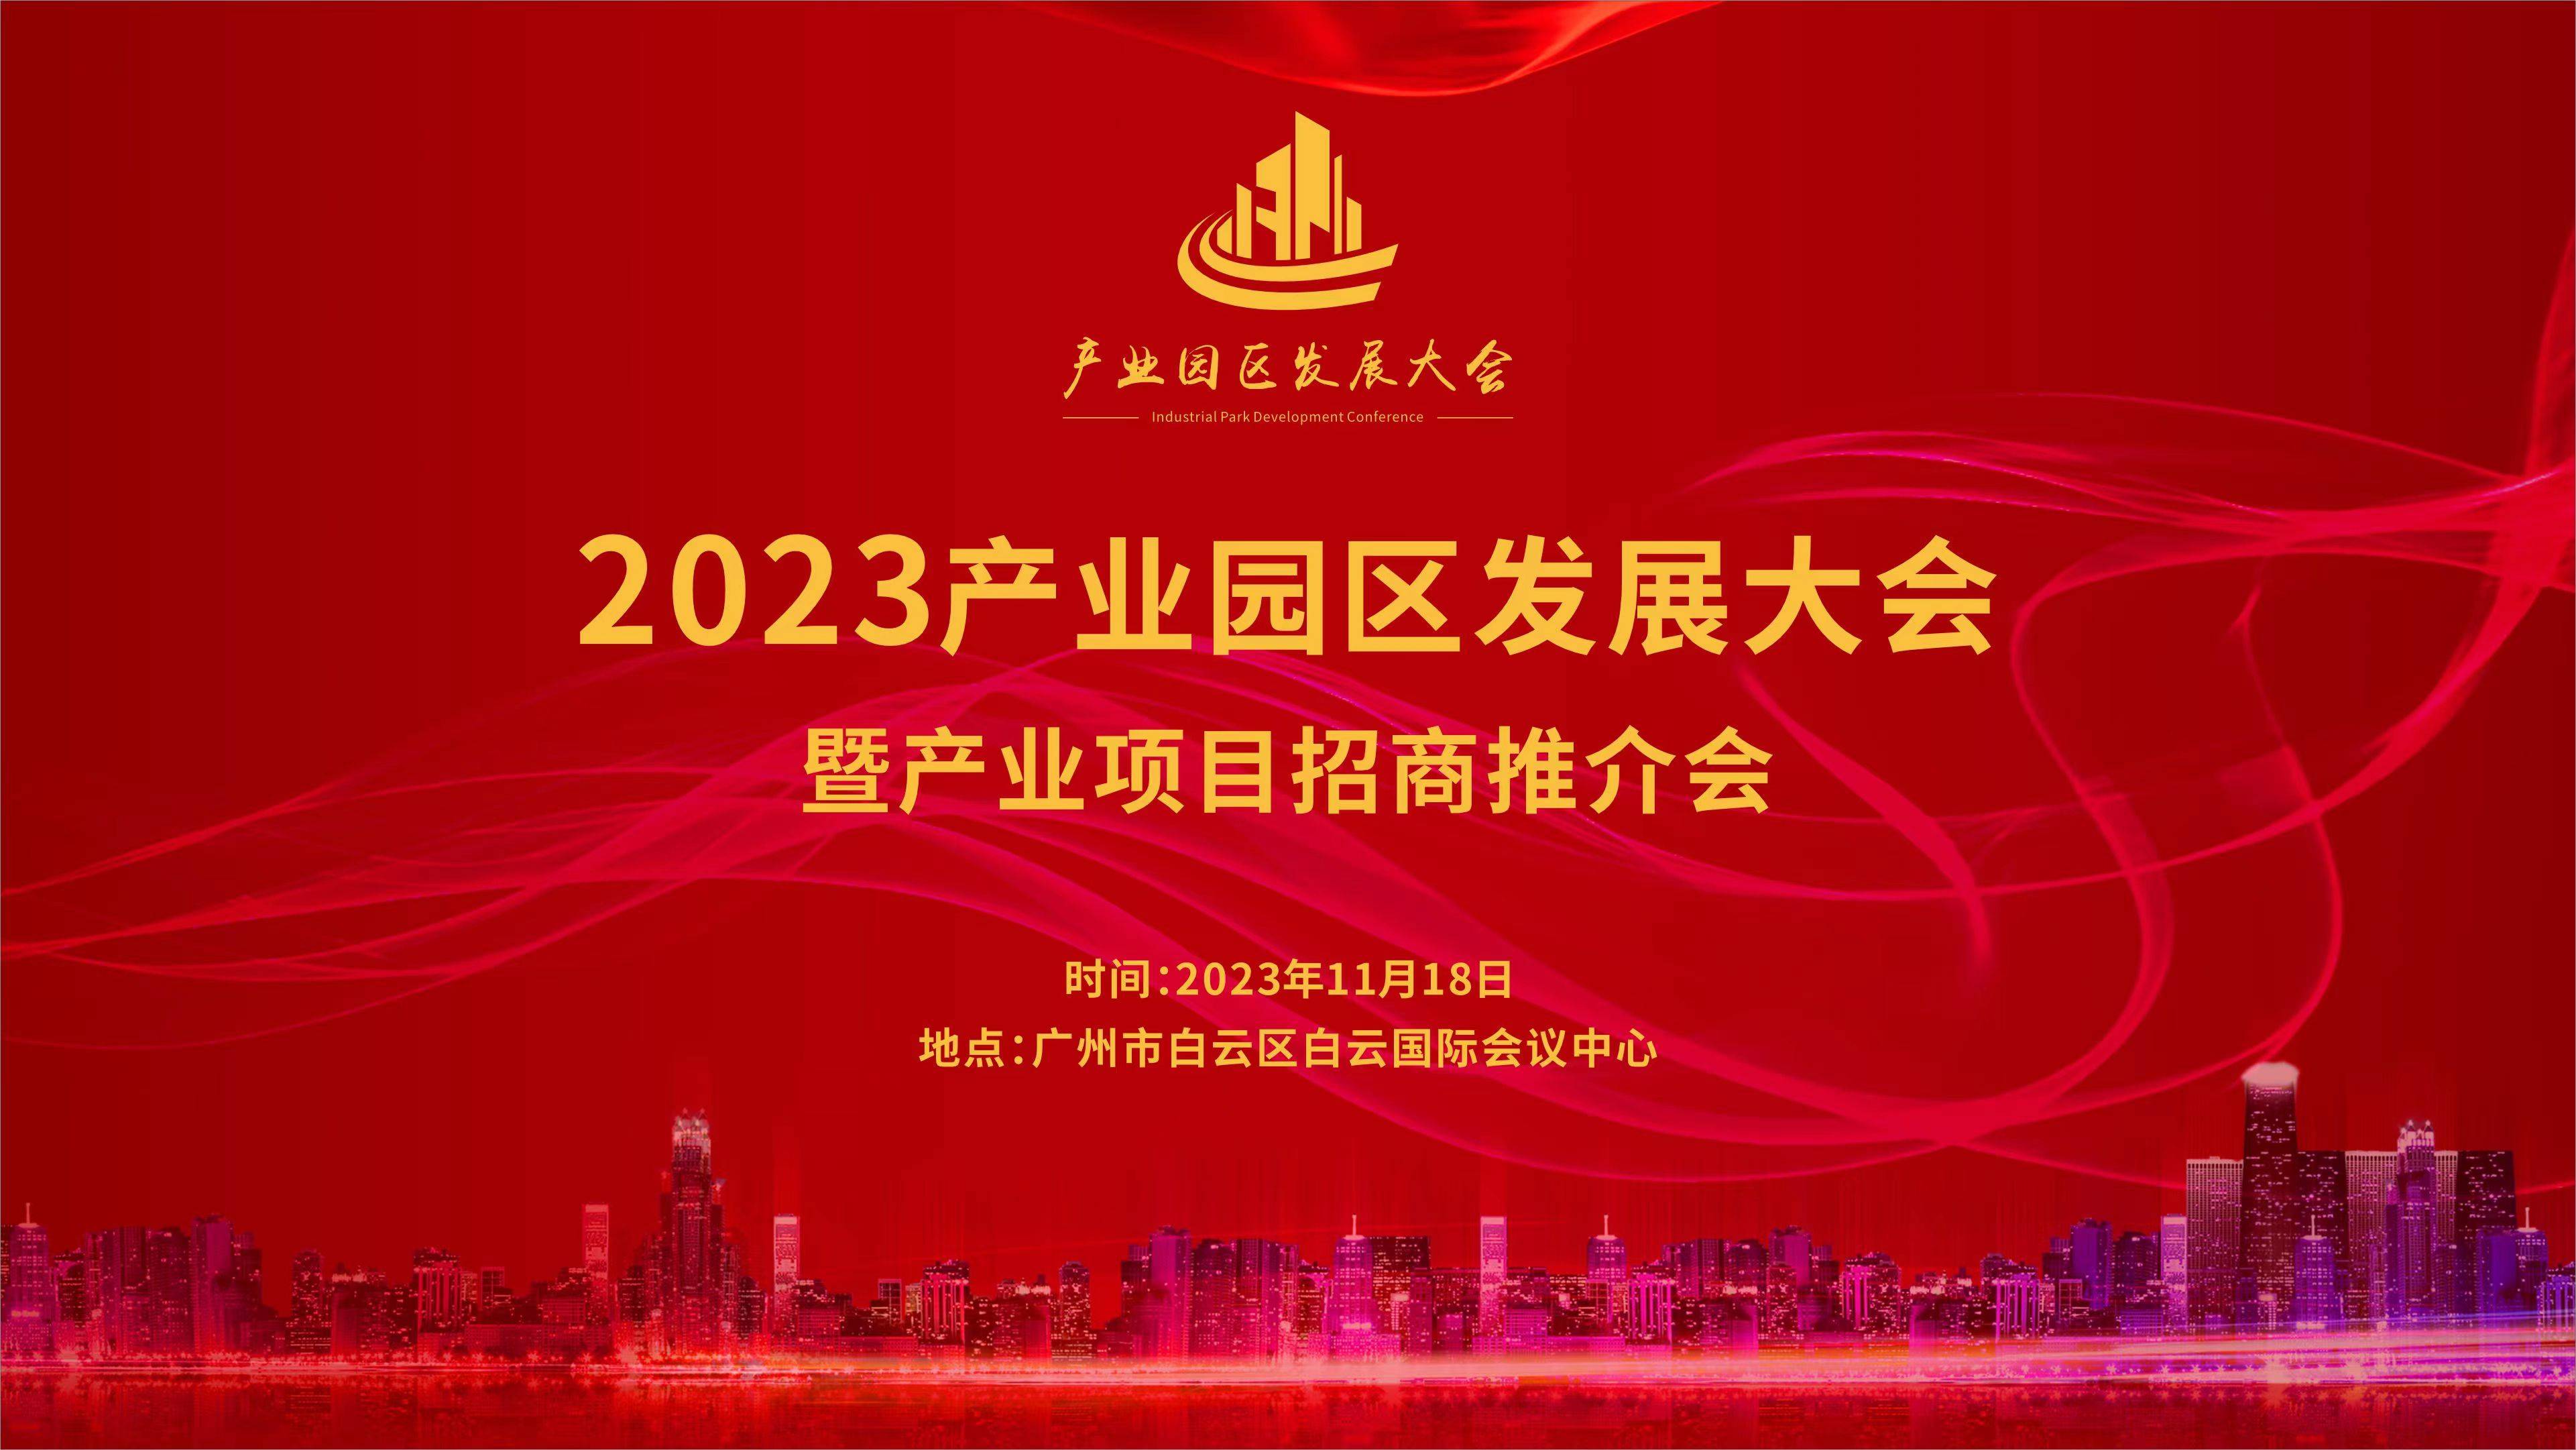 2023产业园区发展大会暨产业项目招商推介会将于11月份在广州召开